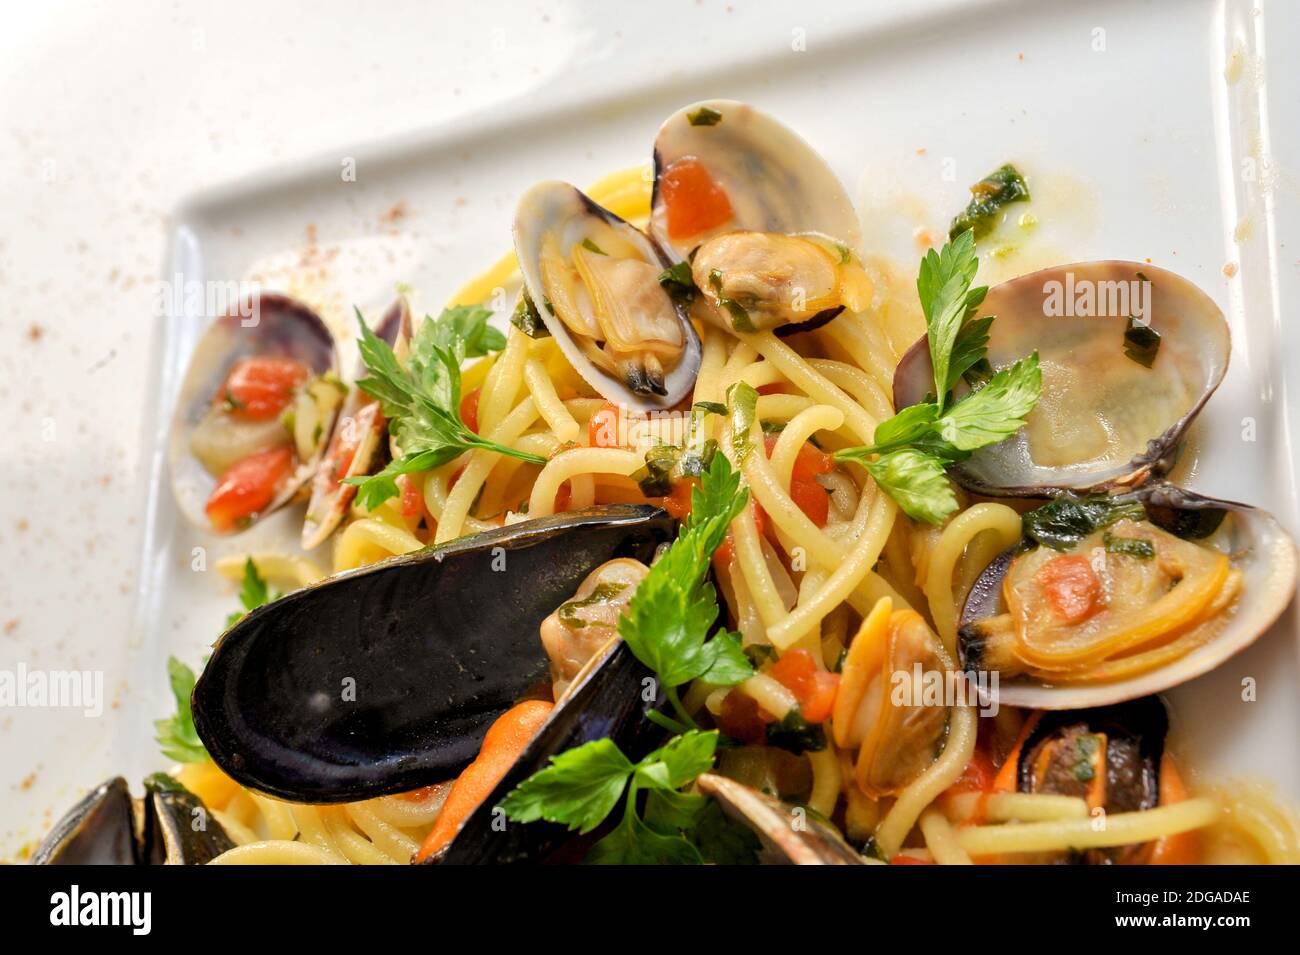 Spaghetti con vongole, cozze e salsa di pomodoro - pasta italiana con frutti di mare, primo piano Foto Stock